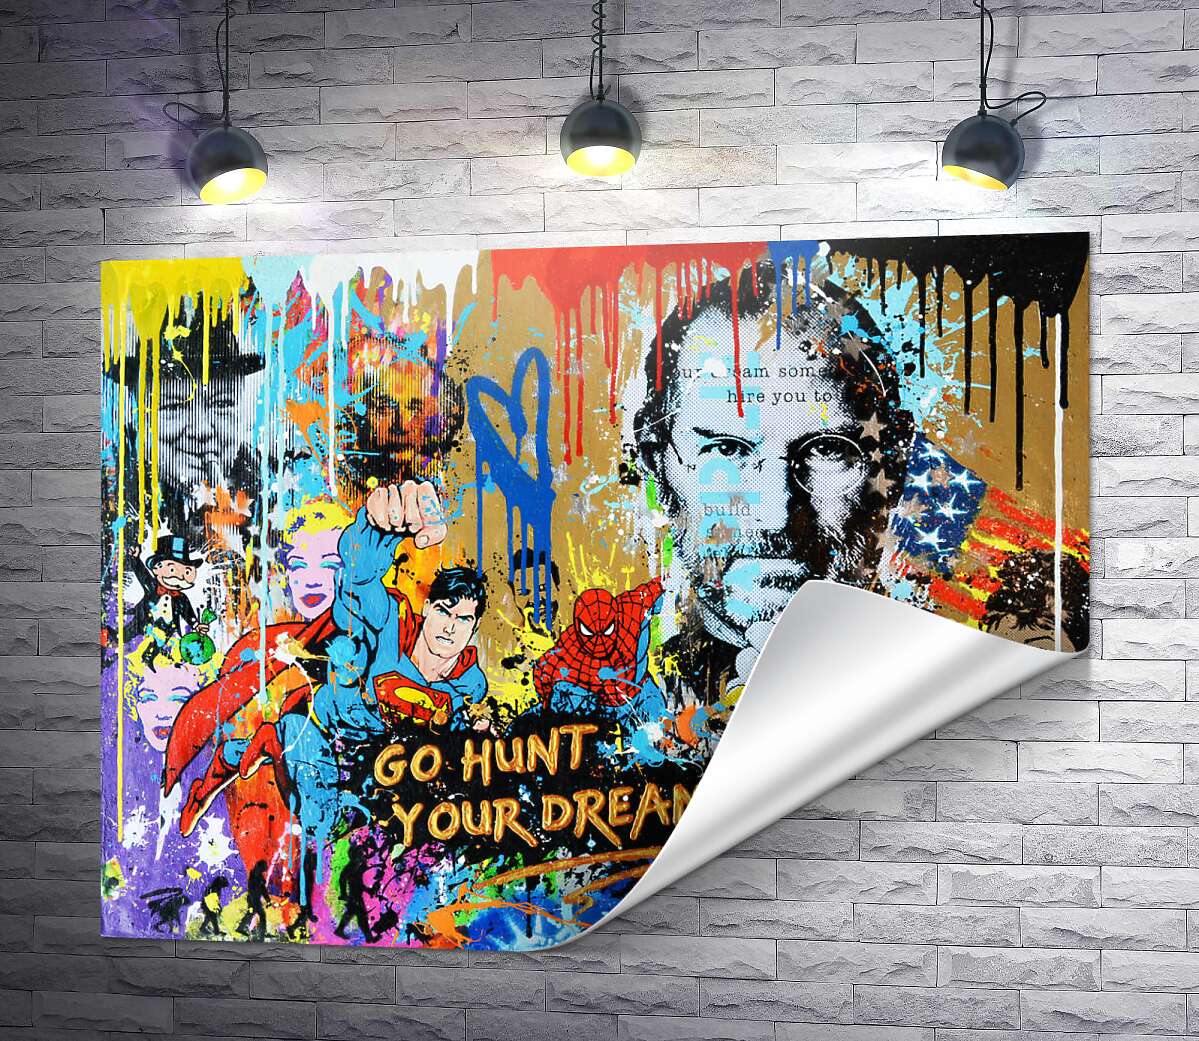 печать Арт граффити с Джобсом - Go hunt your dream